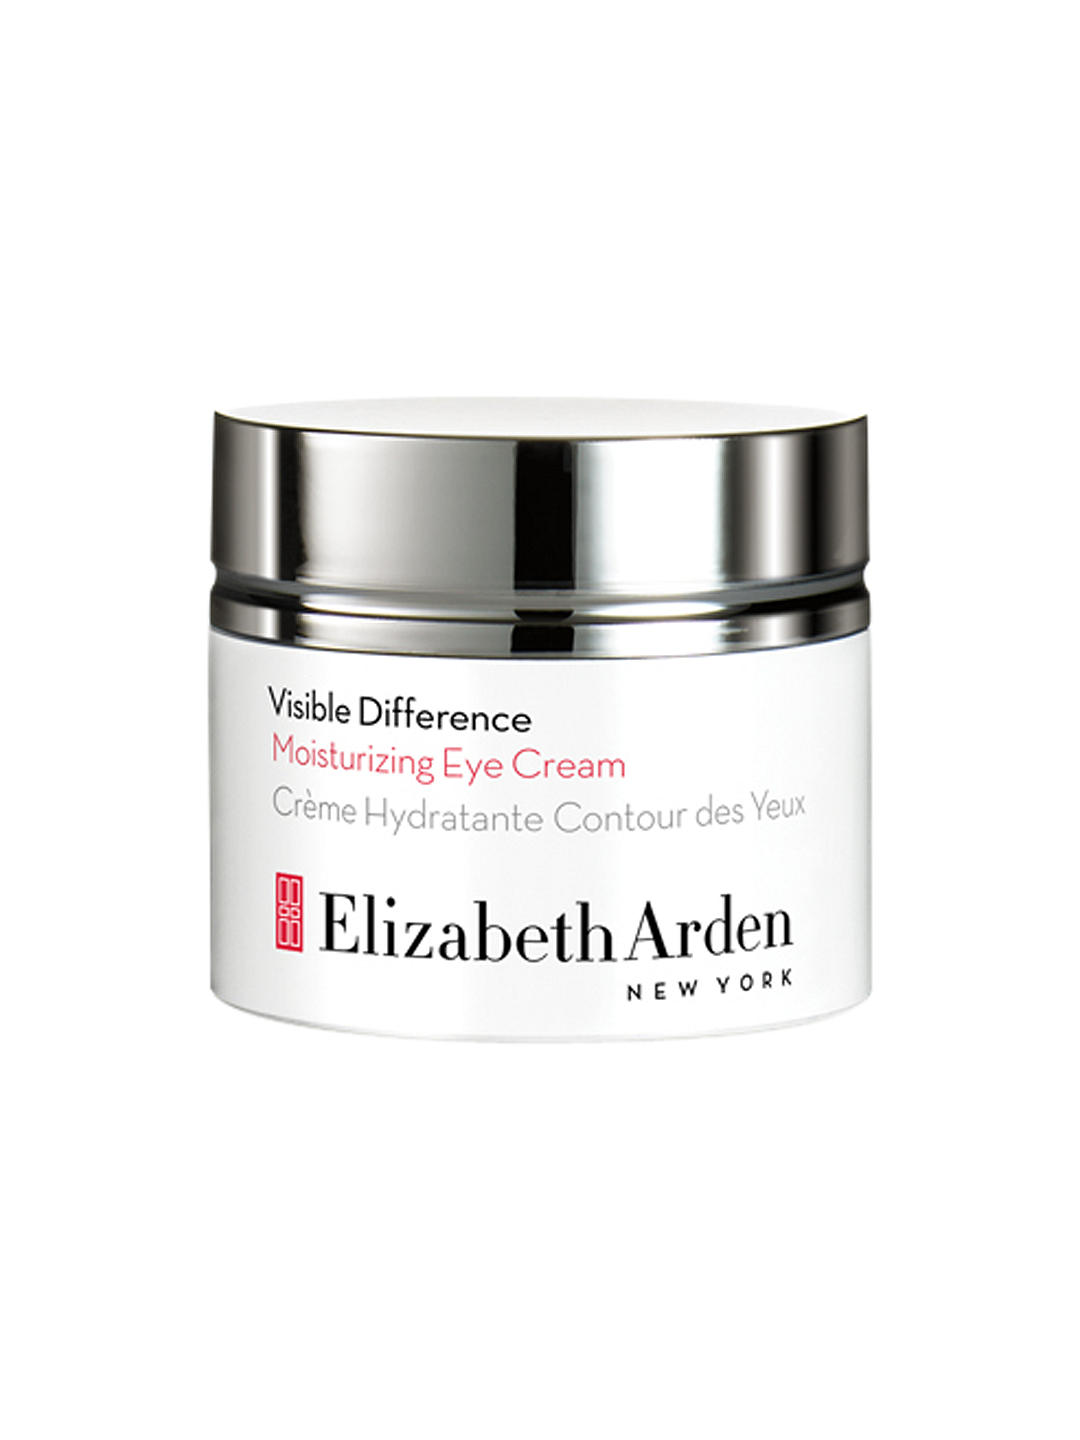 Elizabeth Arden Visible Difference Moisturizing Eye Cream, 15ml 1